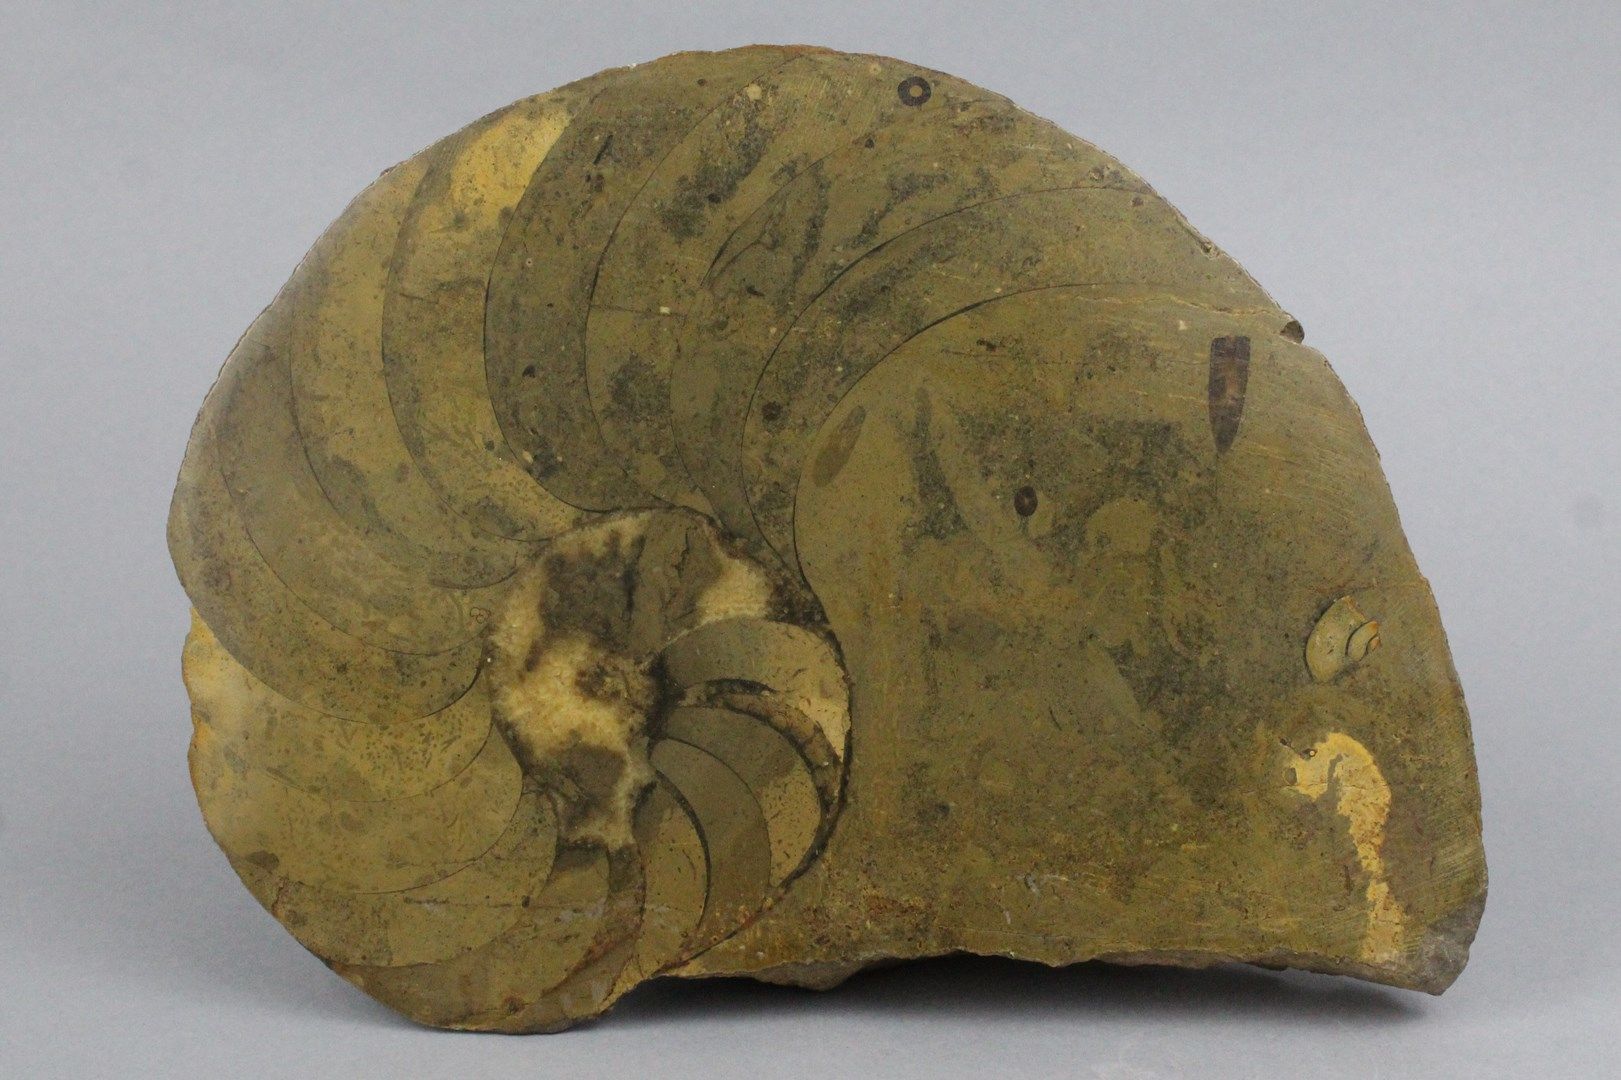 Null Fossilisierter Ammonit.

Geschliffene und polierte Kante. 

Einige wenige K&hellip;